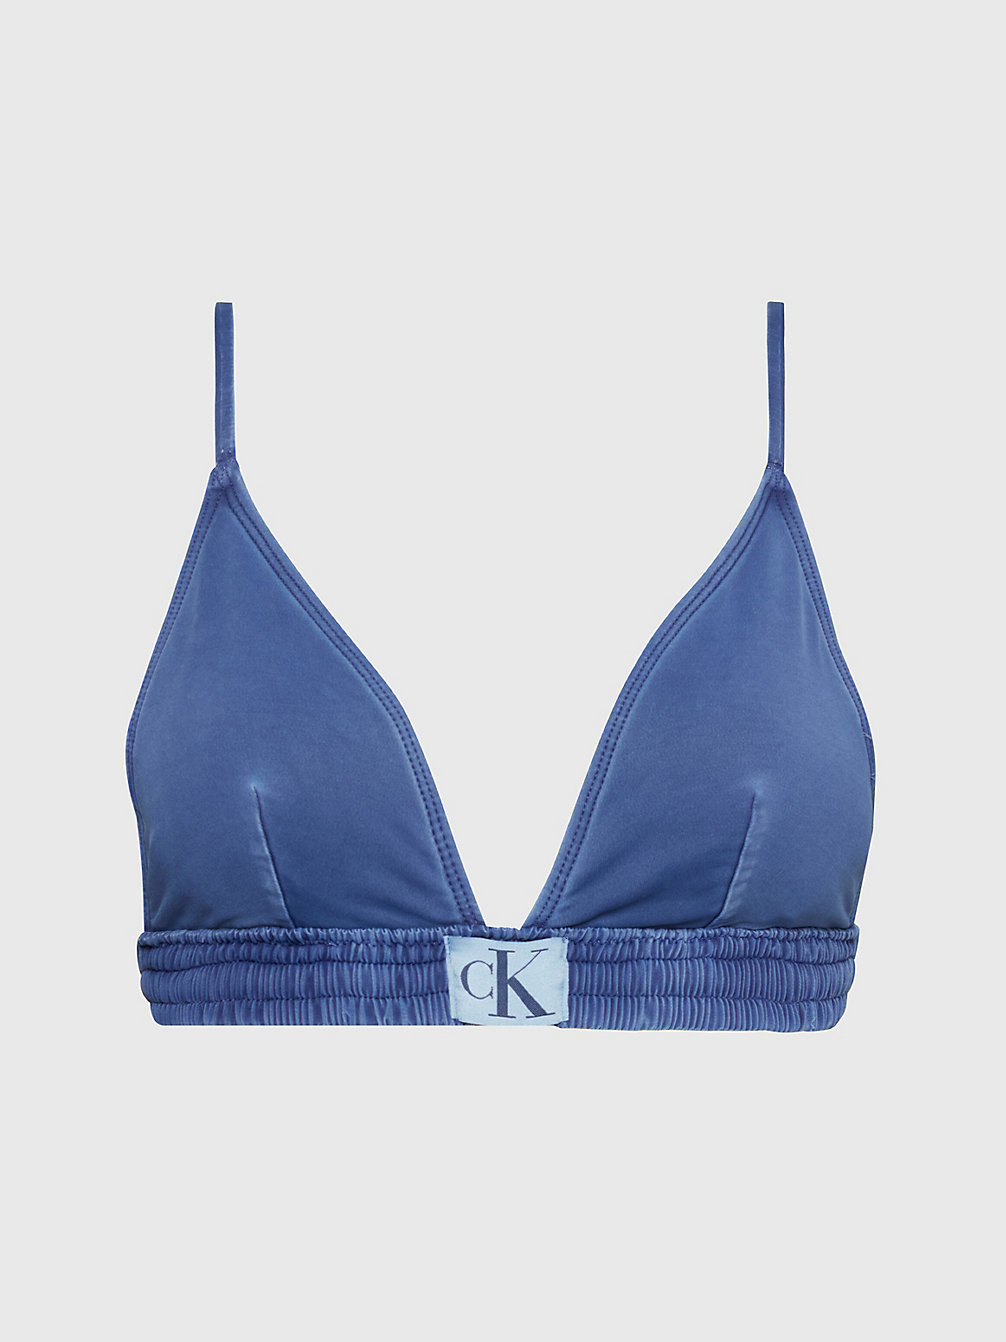 NAVY IRIS Triangel Bikinitop - CK Authentic undefined dames Calvin Klein